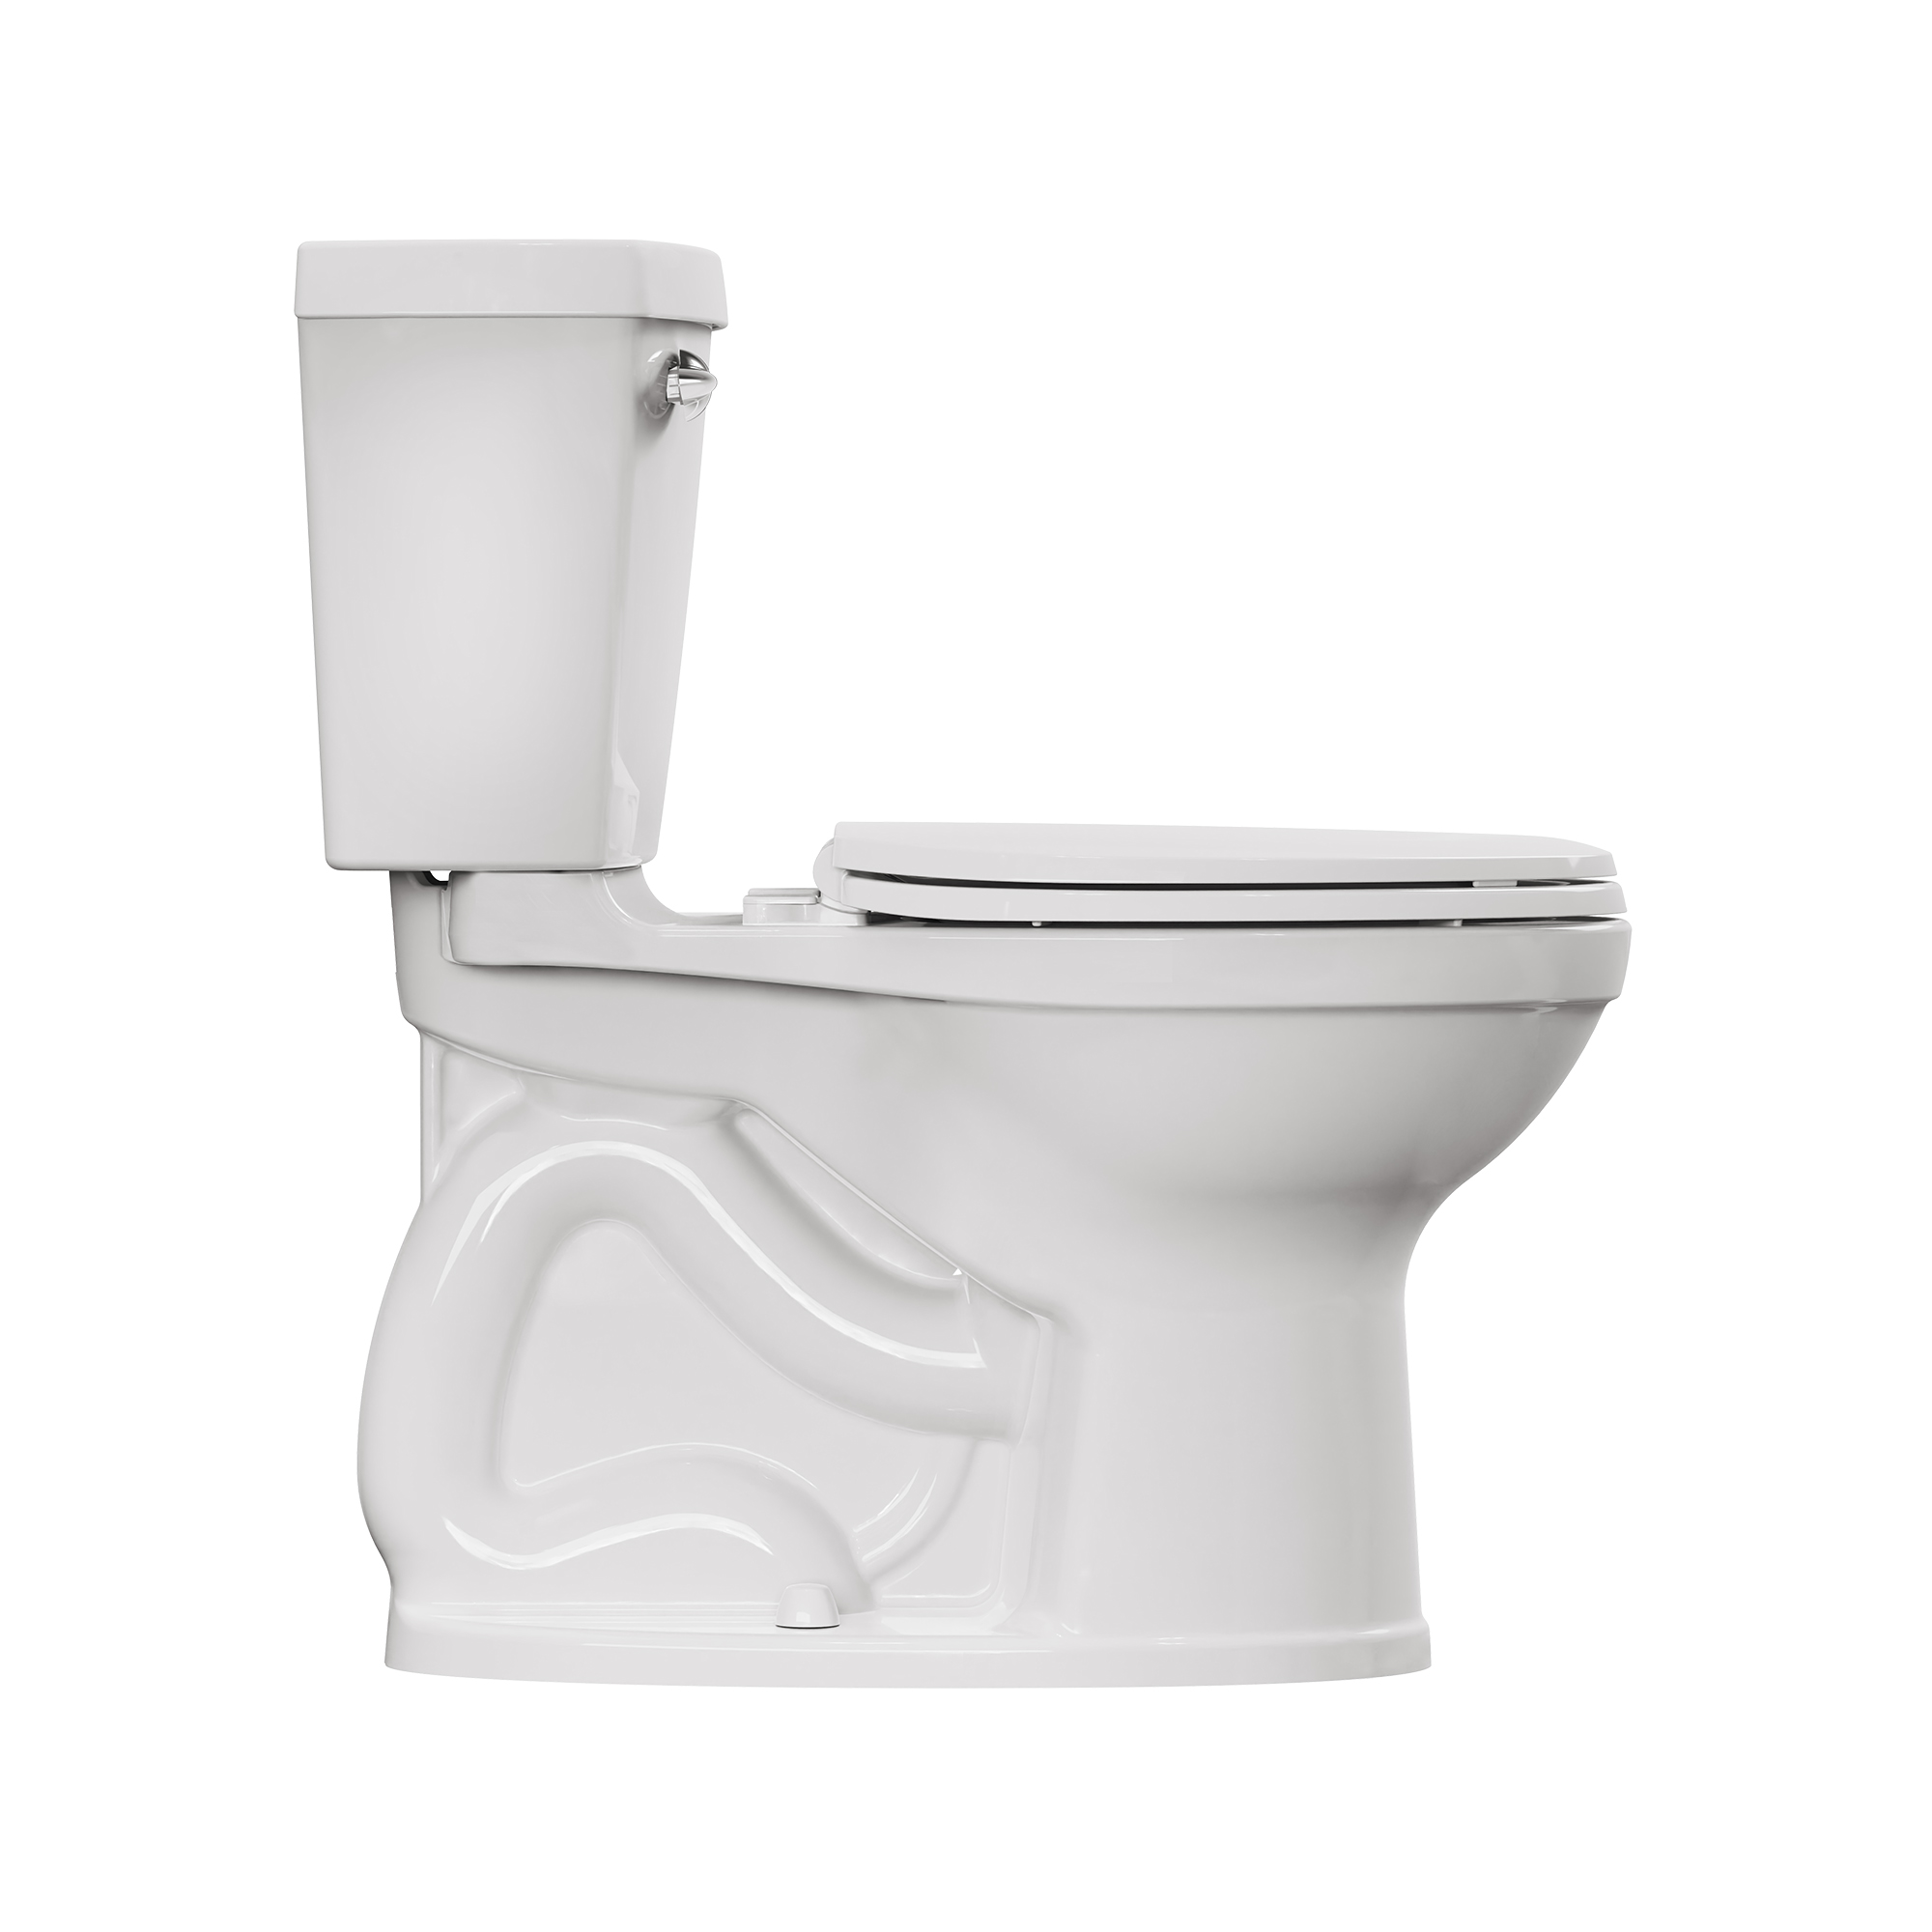 Toilette Champion® 4 complète allongée à hauteur de chaise, deux pièces, 1,28 gpc/4,8 Lpc, avec siège et réservoir doublé